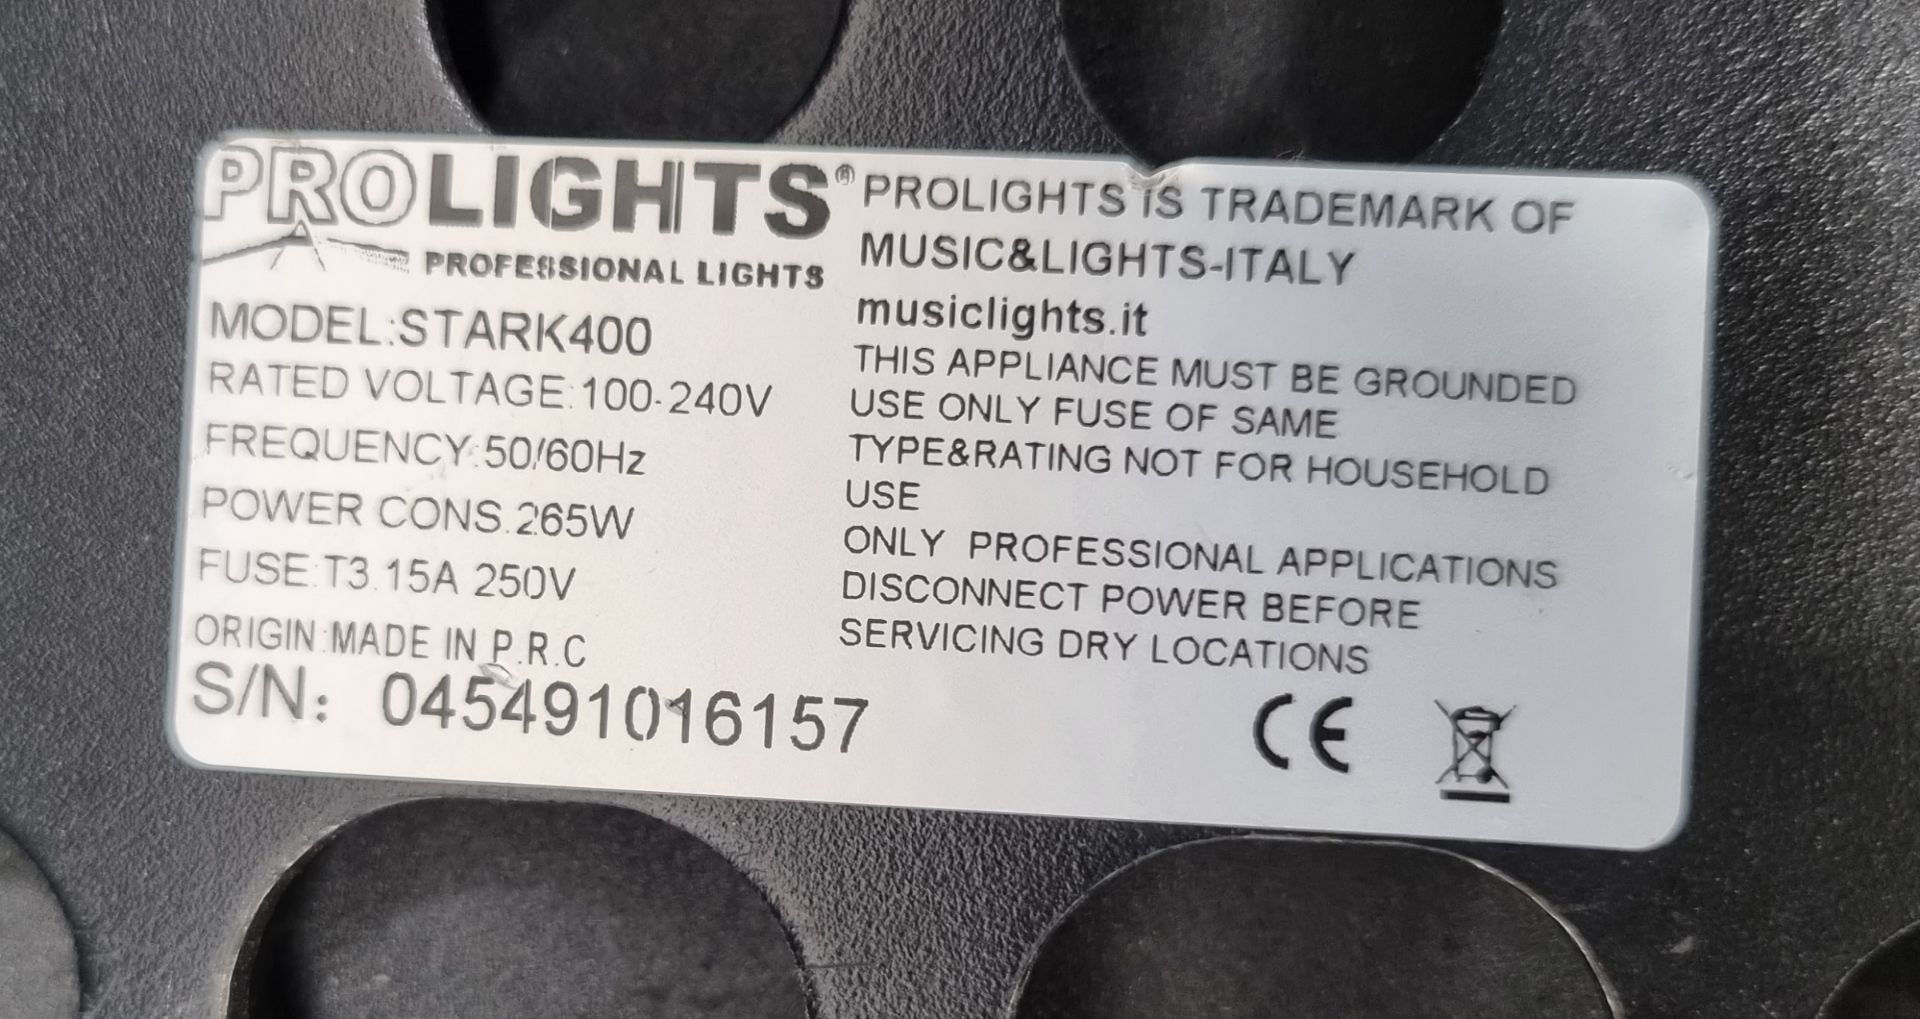 4x Prolights Stark 400 with flightcase, hanging brackets and safety bonds. S/N:045491016248 - Bild 12 aus 14